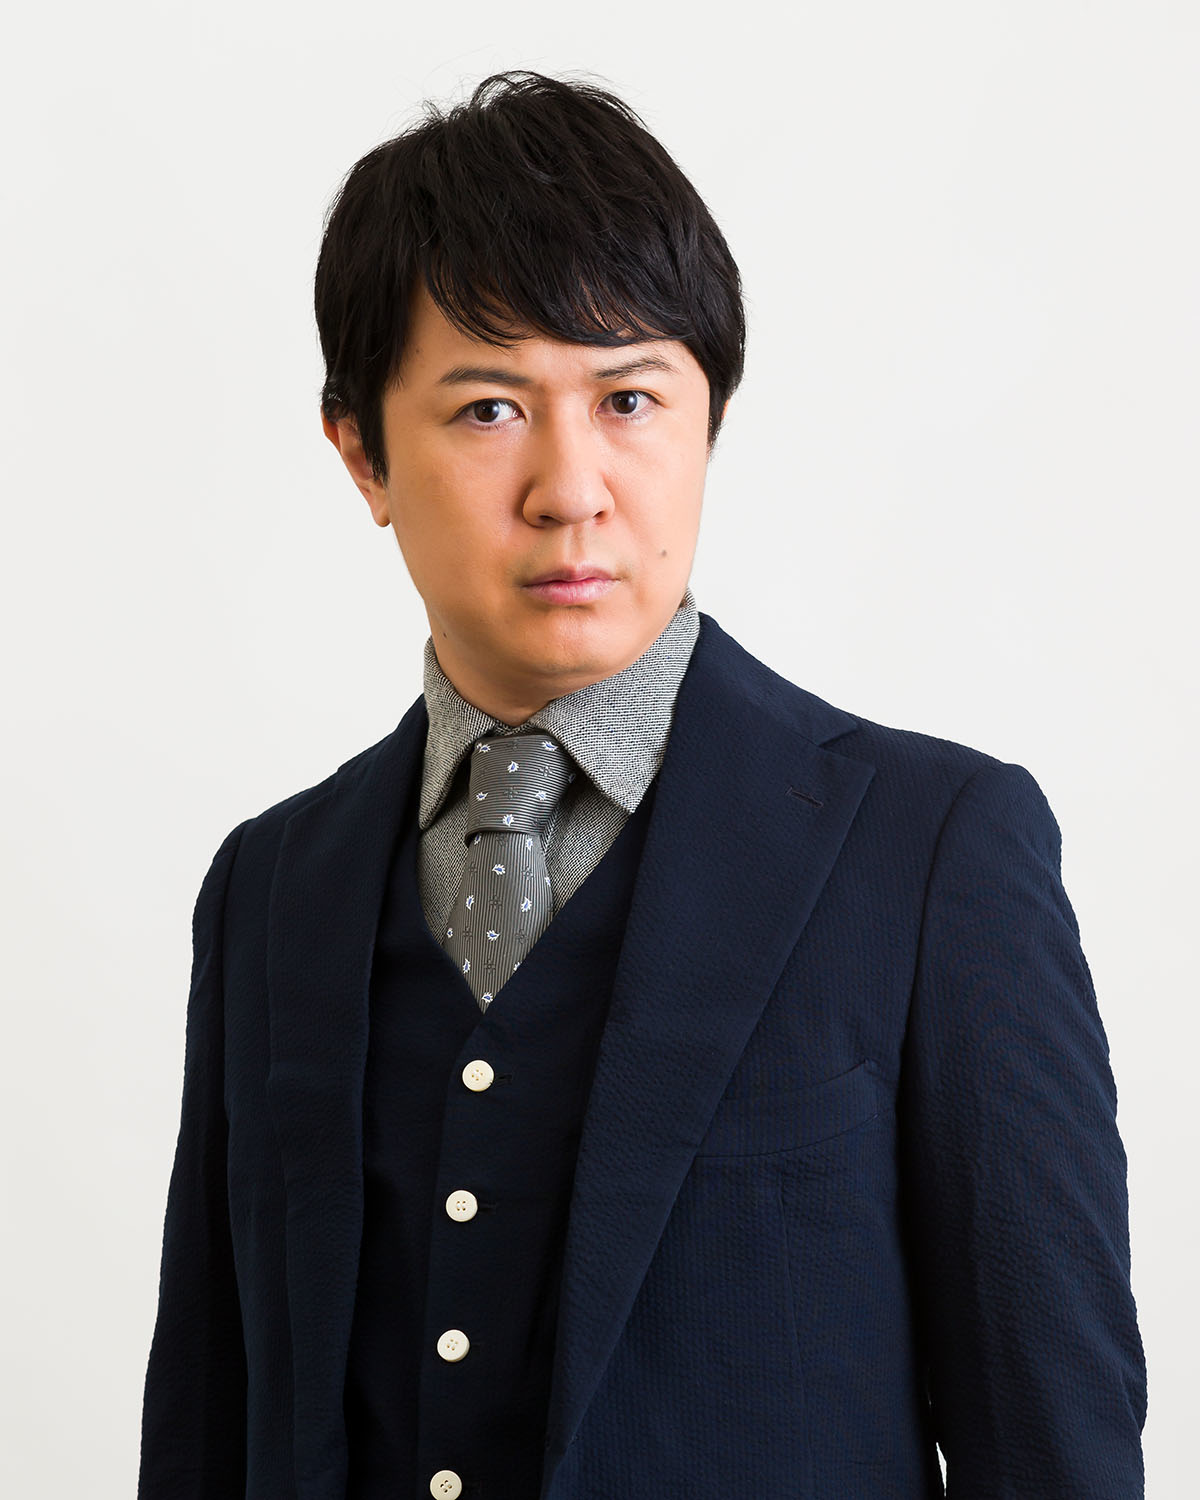 スーツを着ている声優の杉田智和